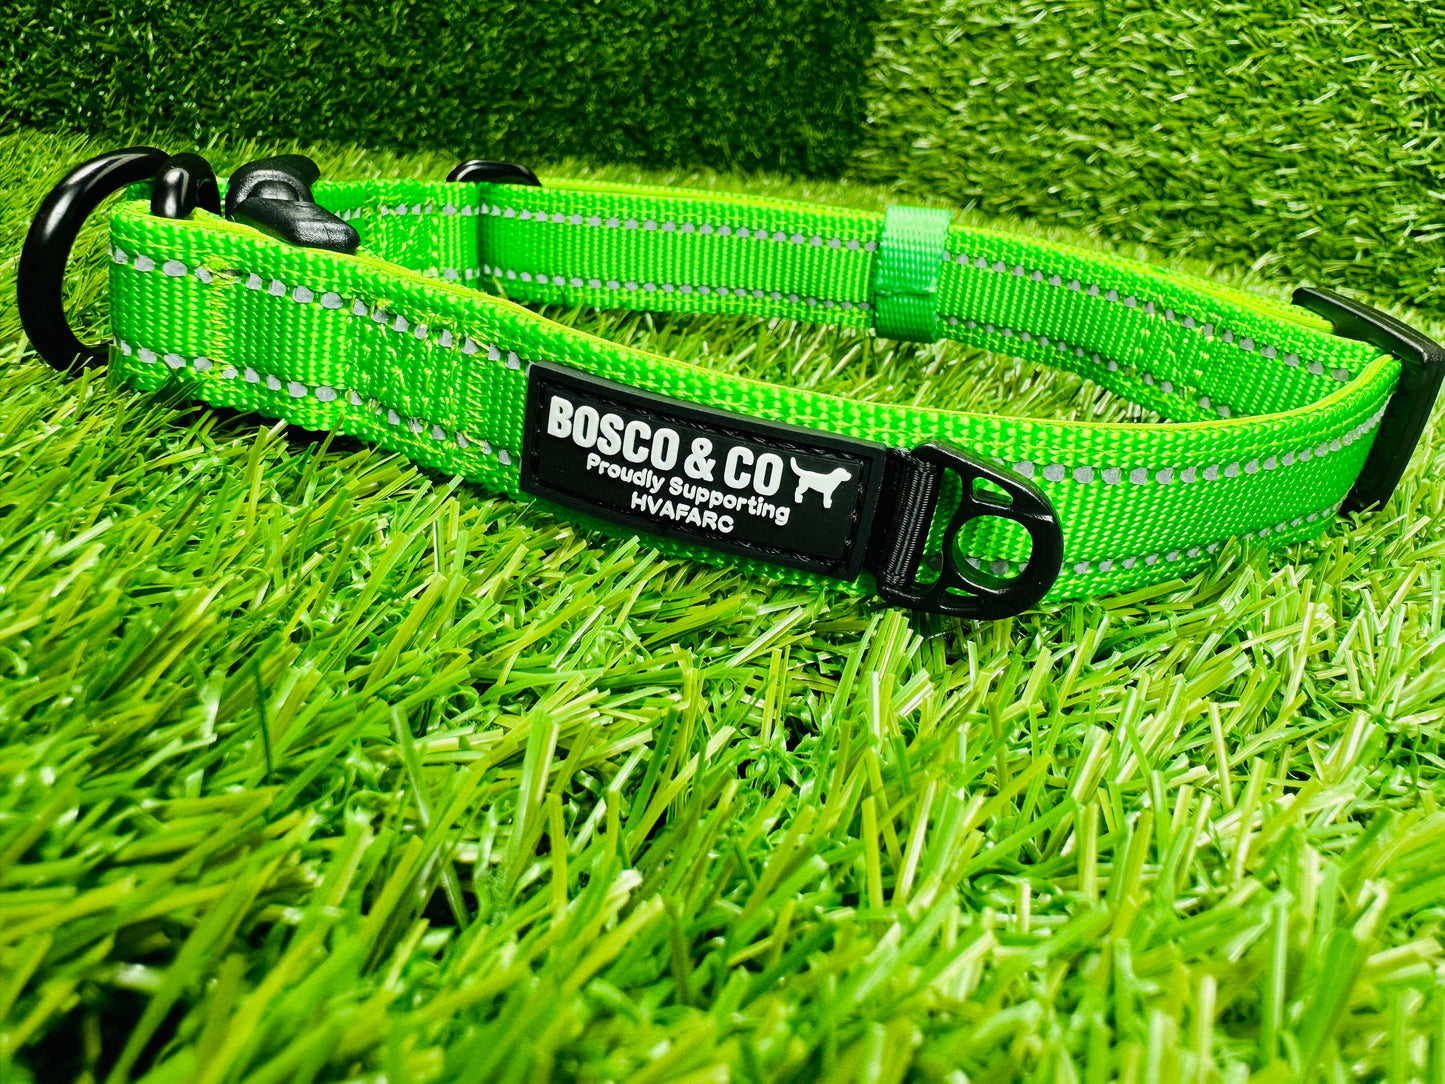 Bosco & Co plain Green collar